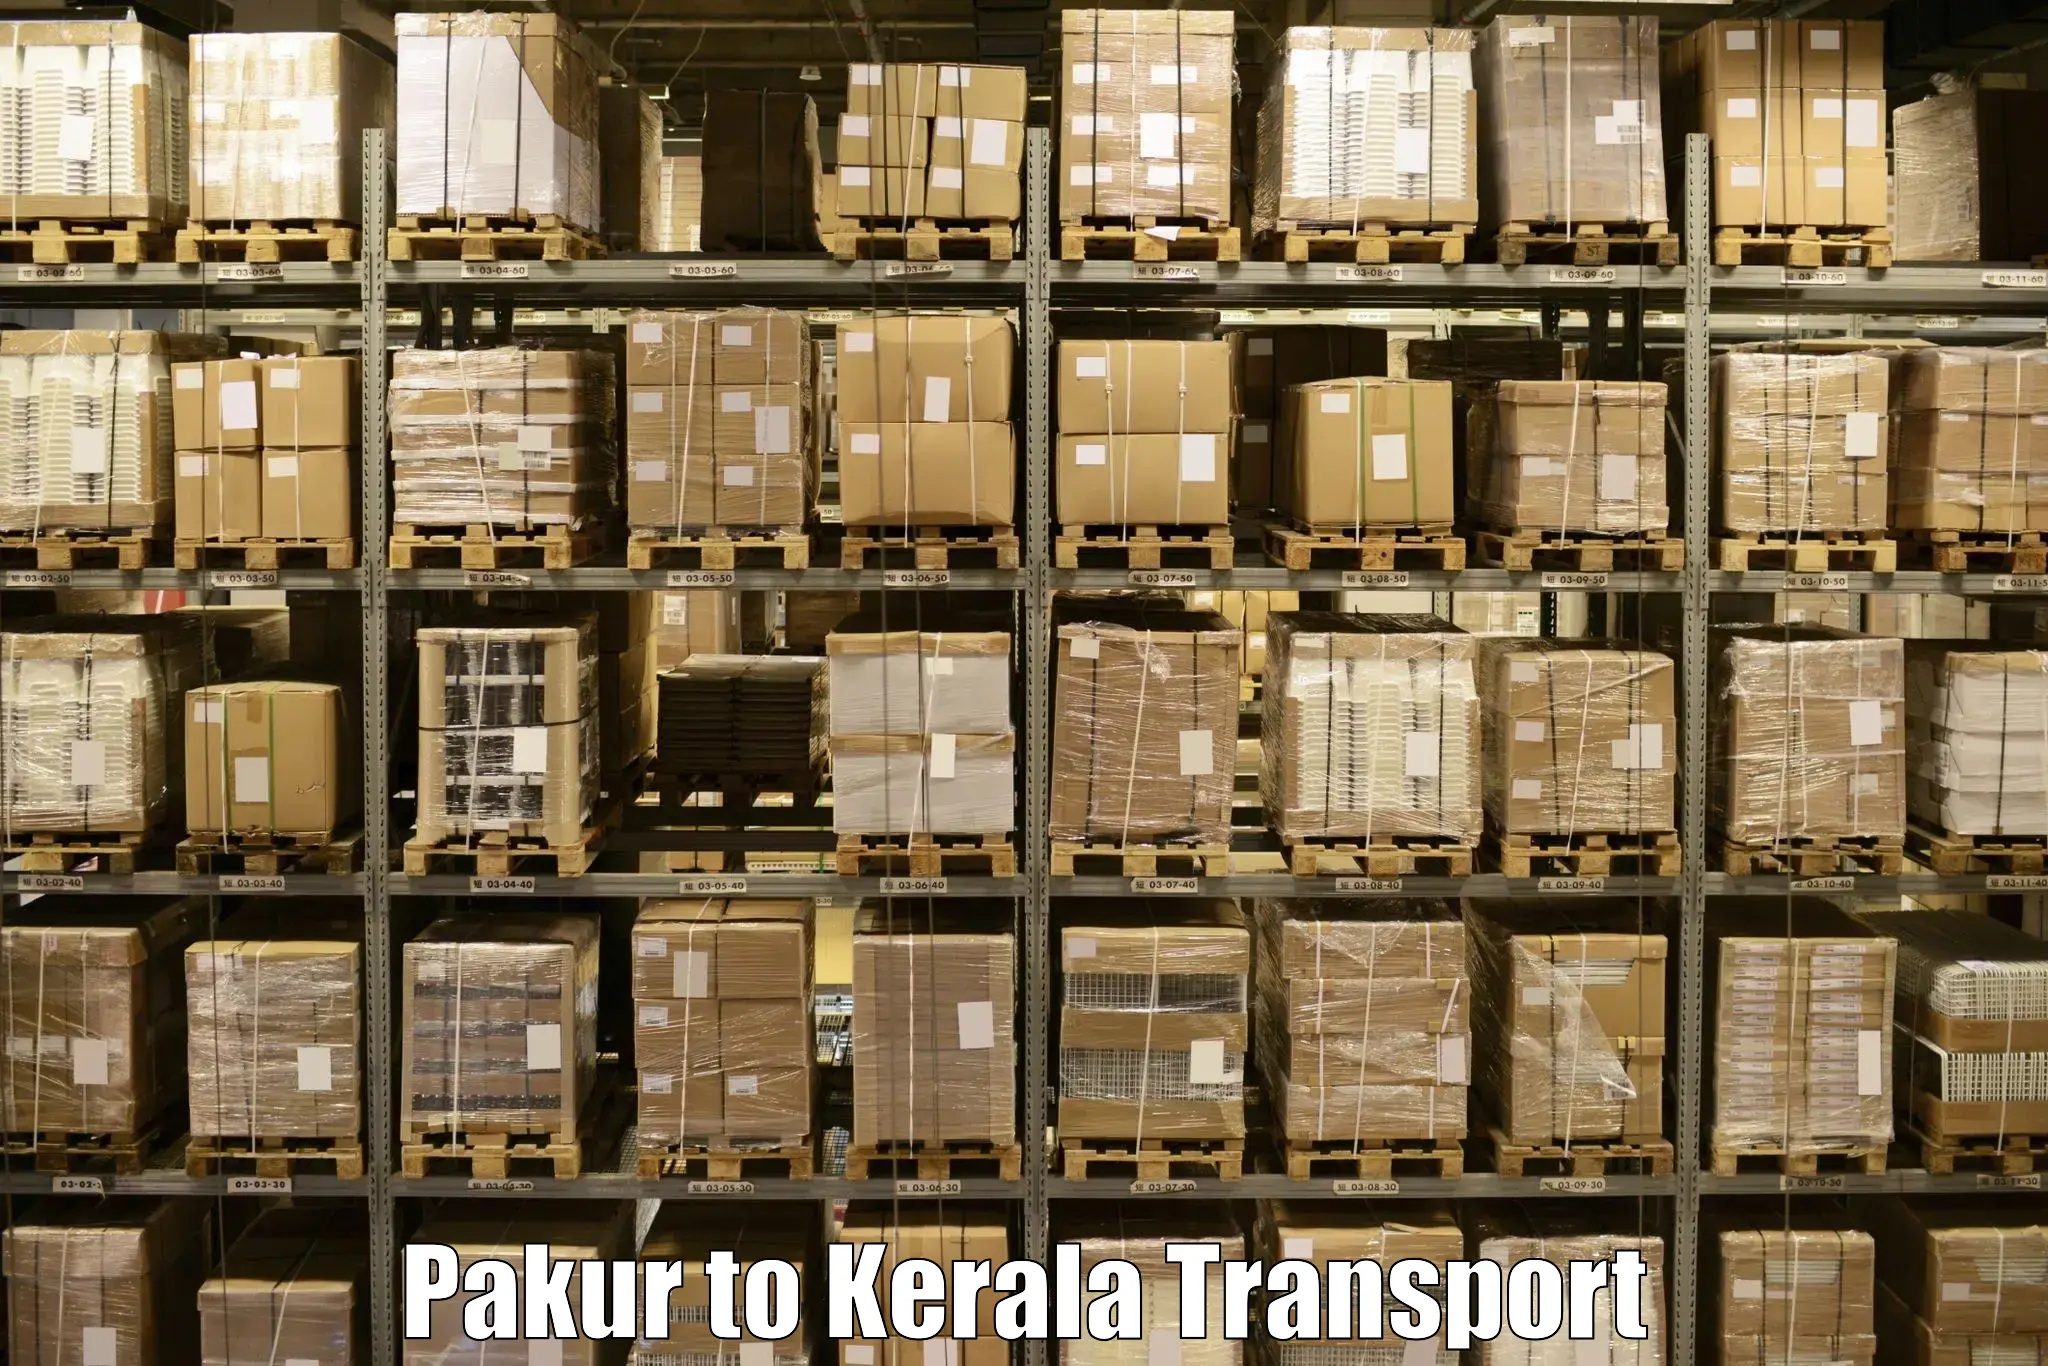 Shipping partner Pakur to Perinthalmanna